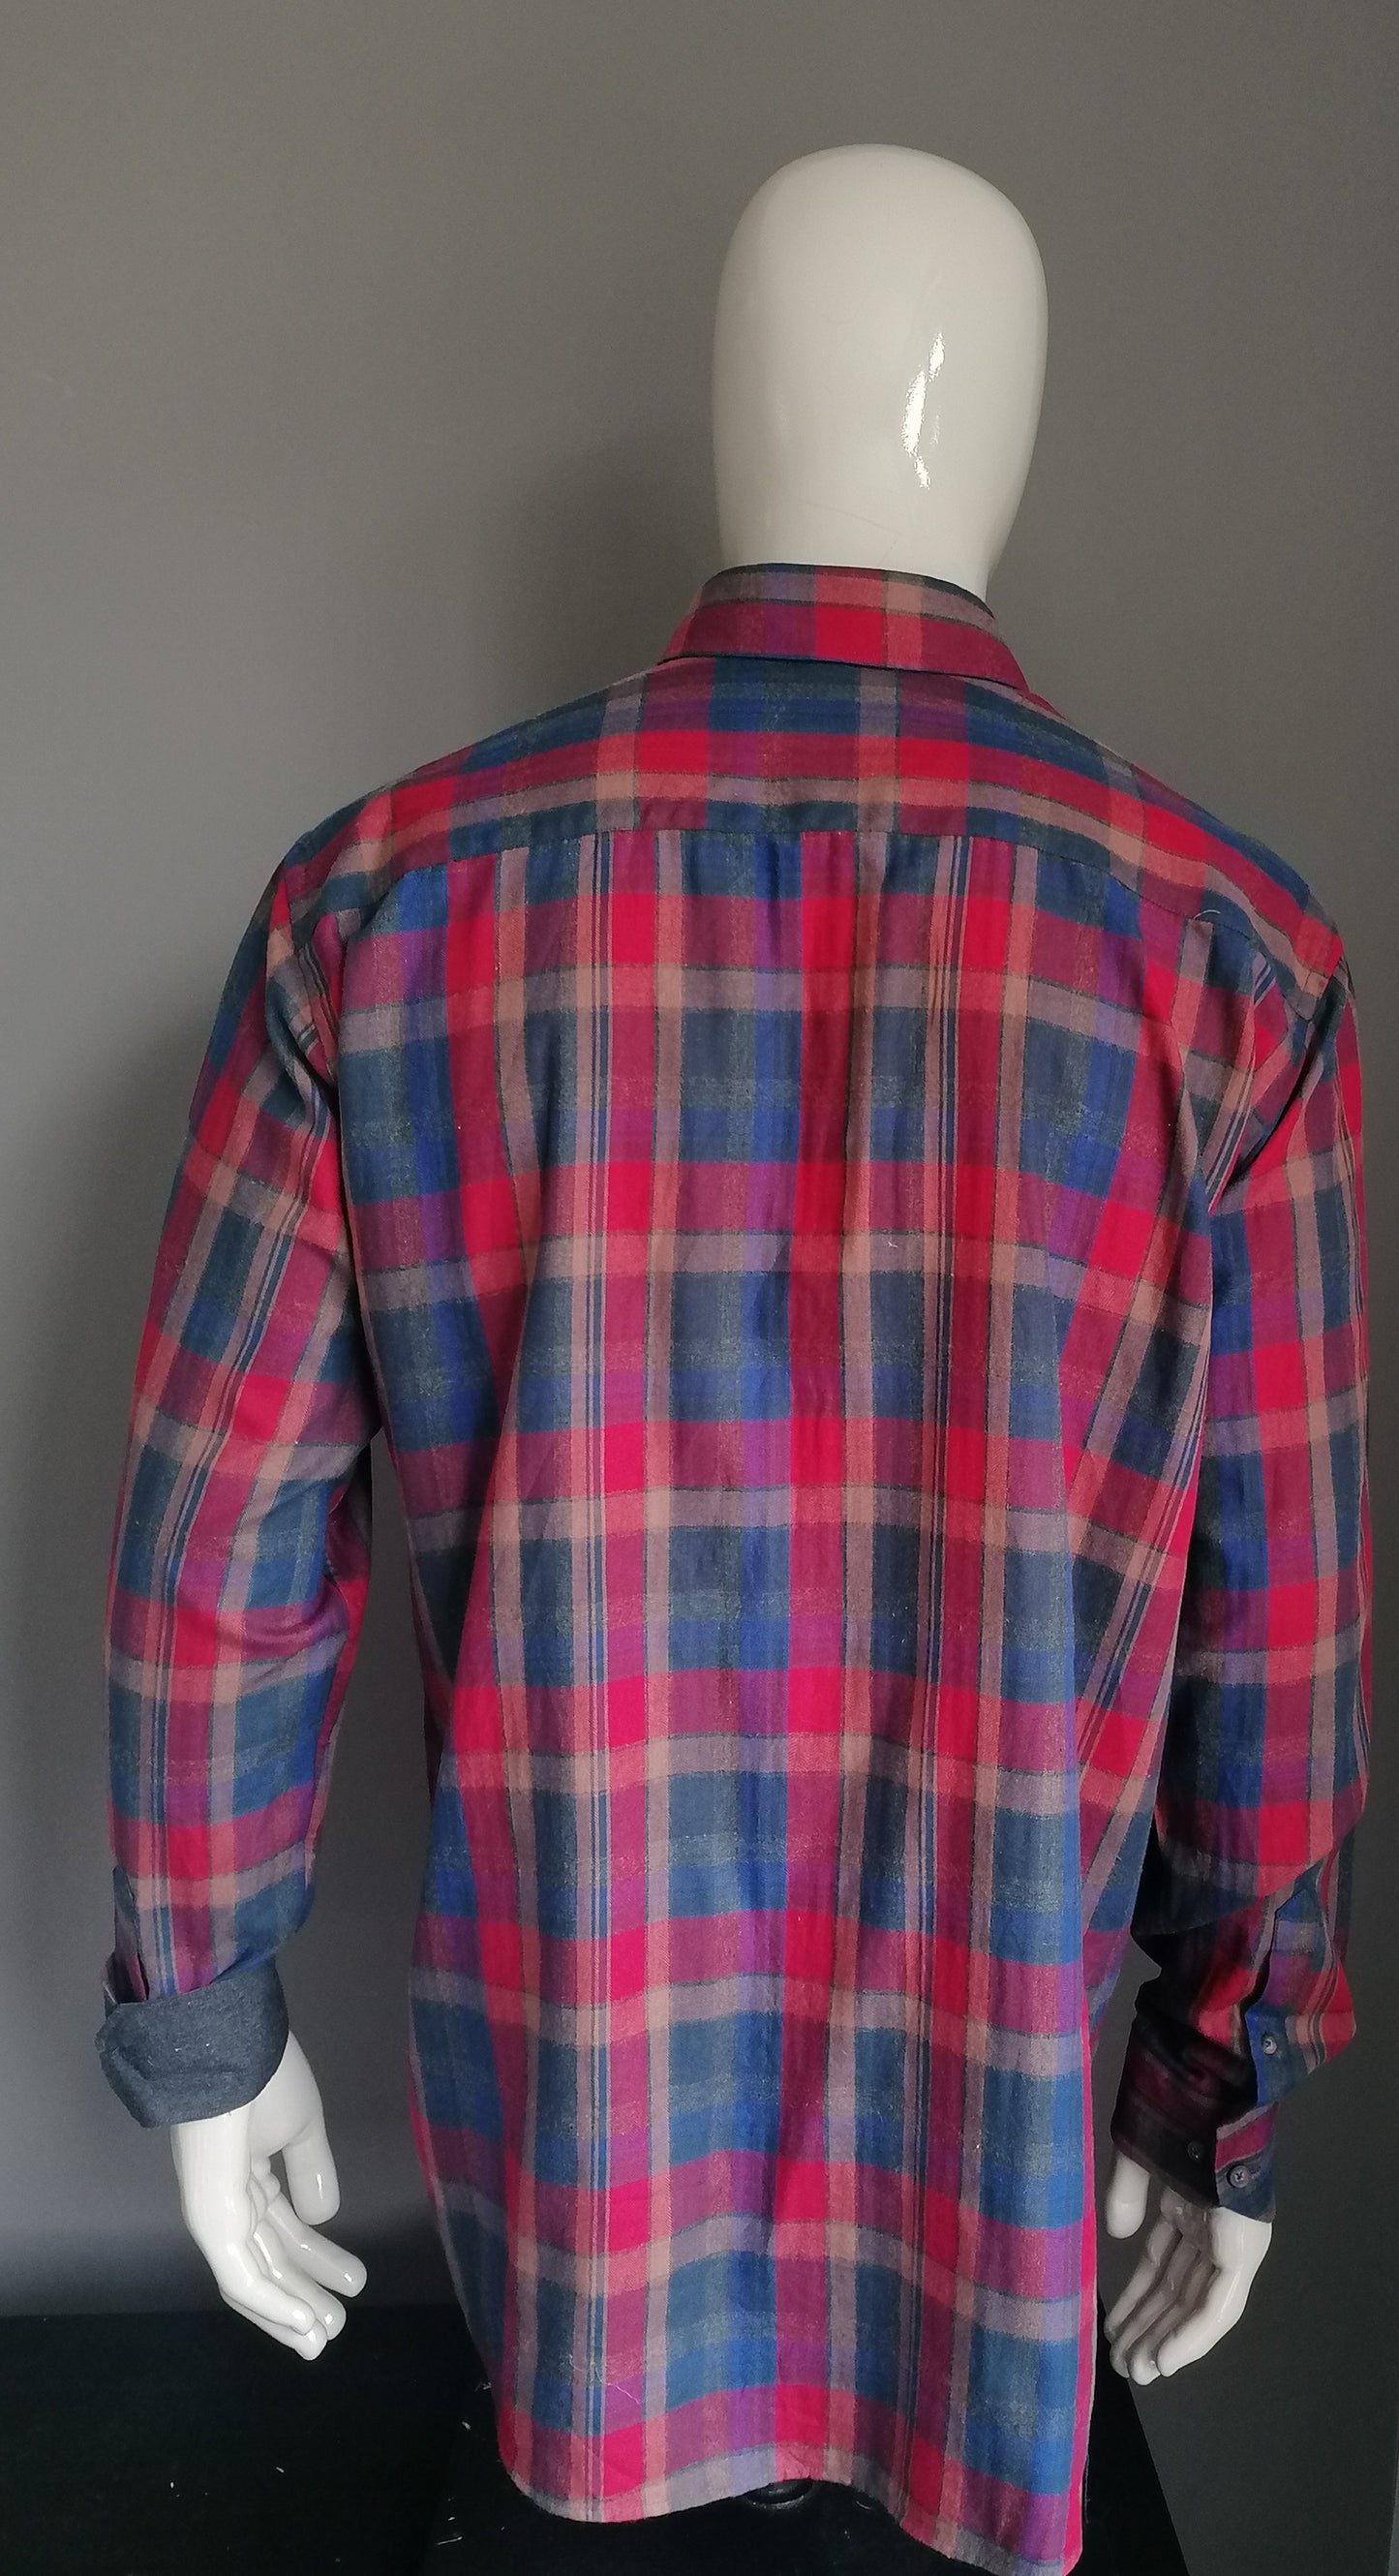 Jim Spencer Shirt. Rotblau -Braun überprüft. Größe xl.